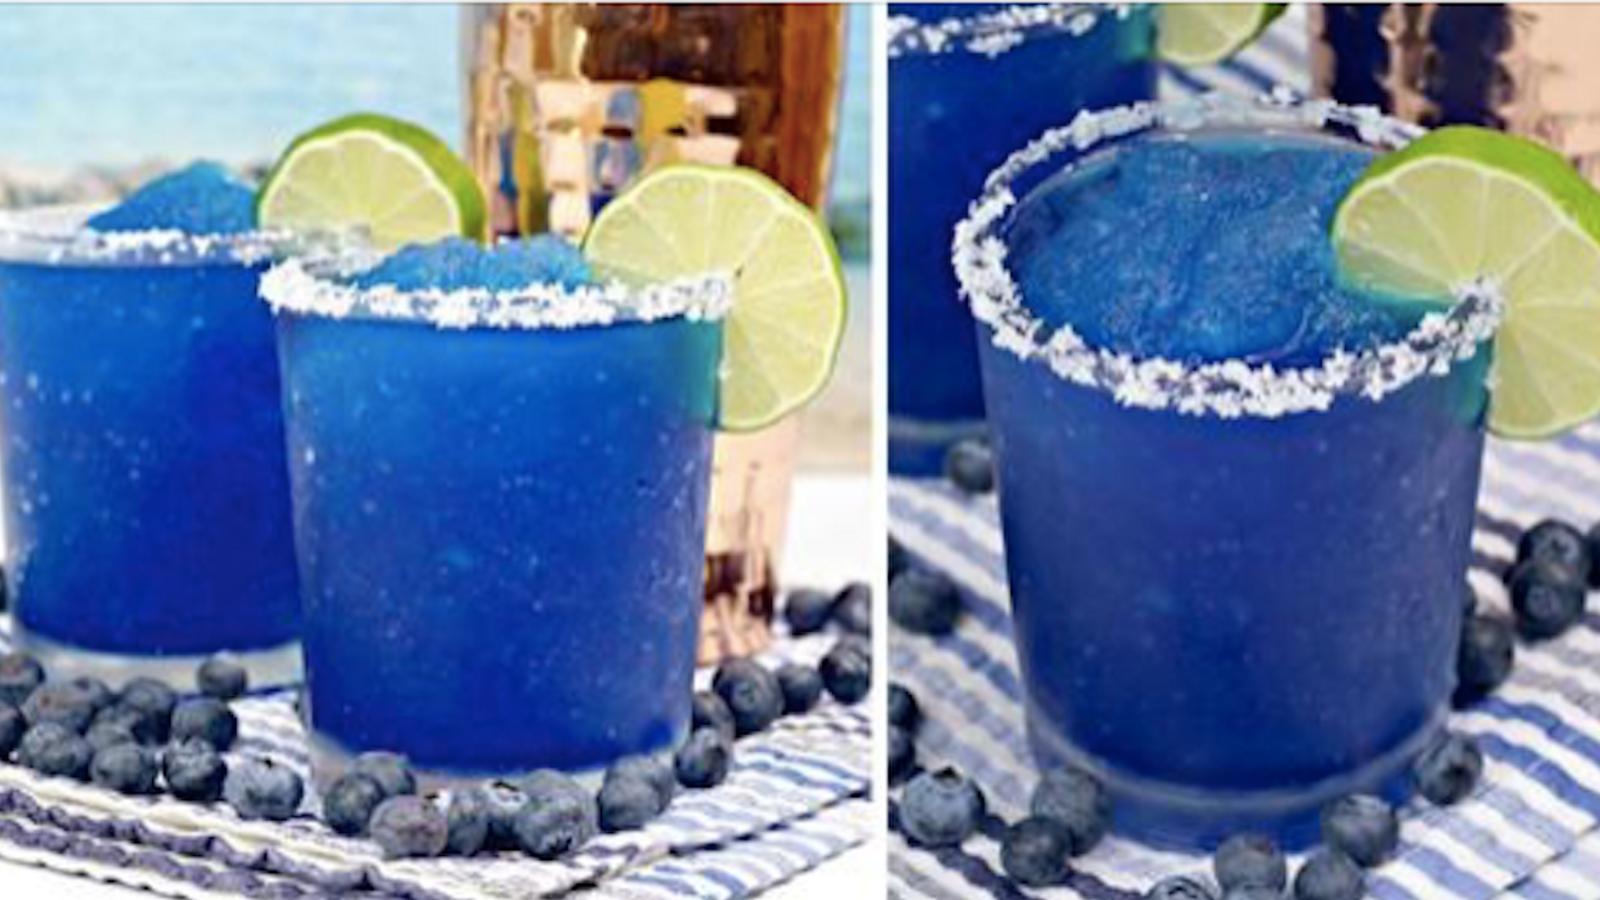 Magnifique Margarita glacée aux bleuets